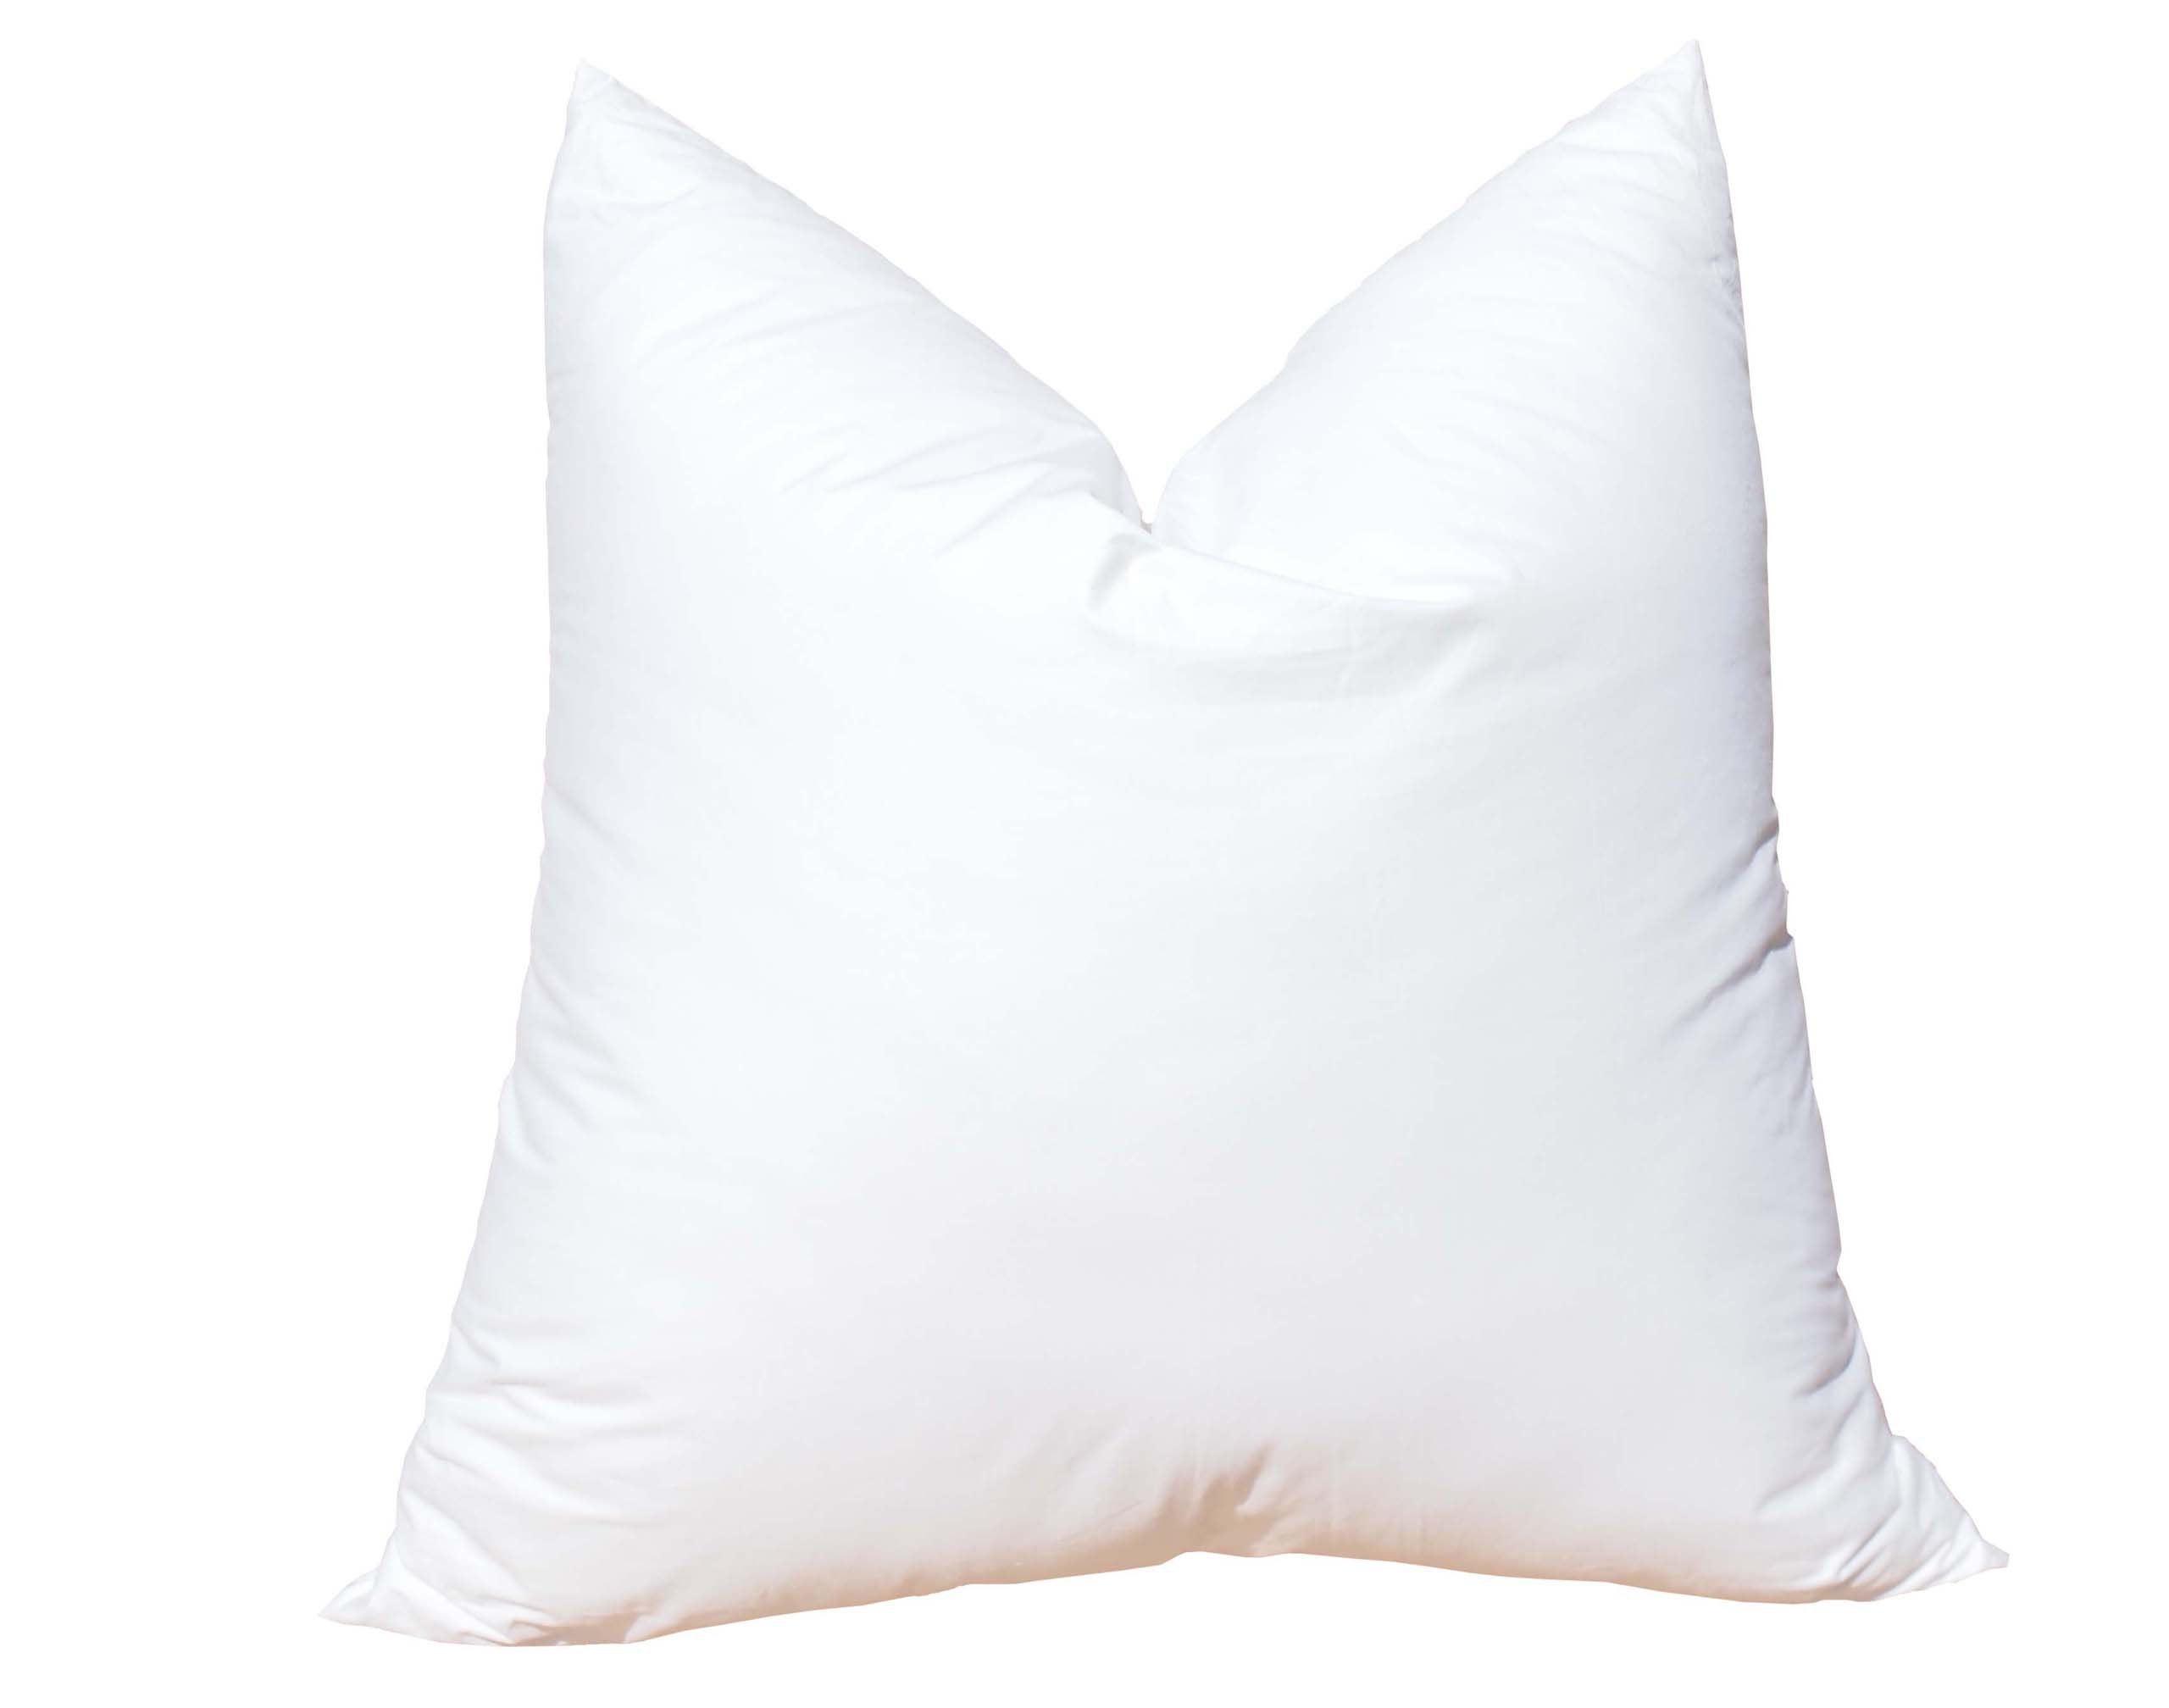 Pillowflex Synthetic Down Pillow Insert - 28x28 Down Alternative Pillow,  Ultra Soft Body Pillow, Large Standard Body Bed Sleeping Pillow - 1